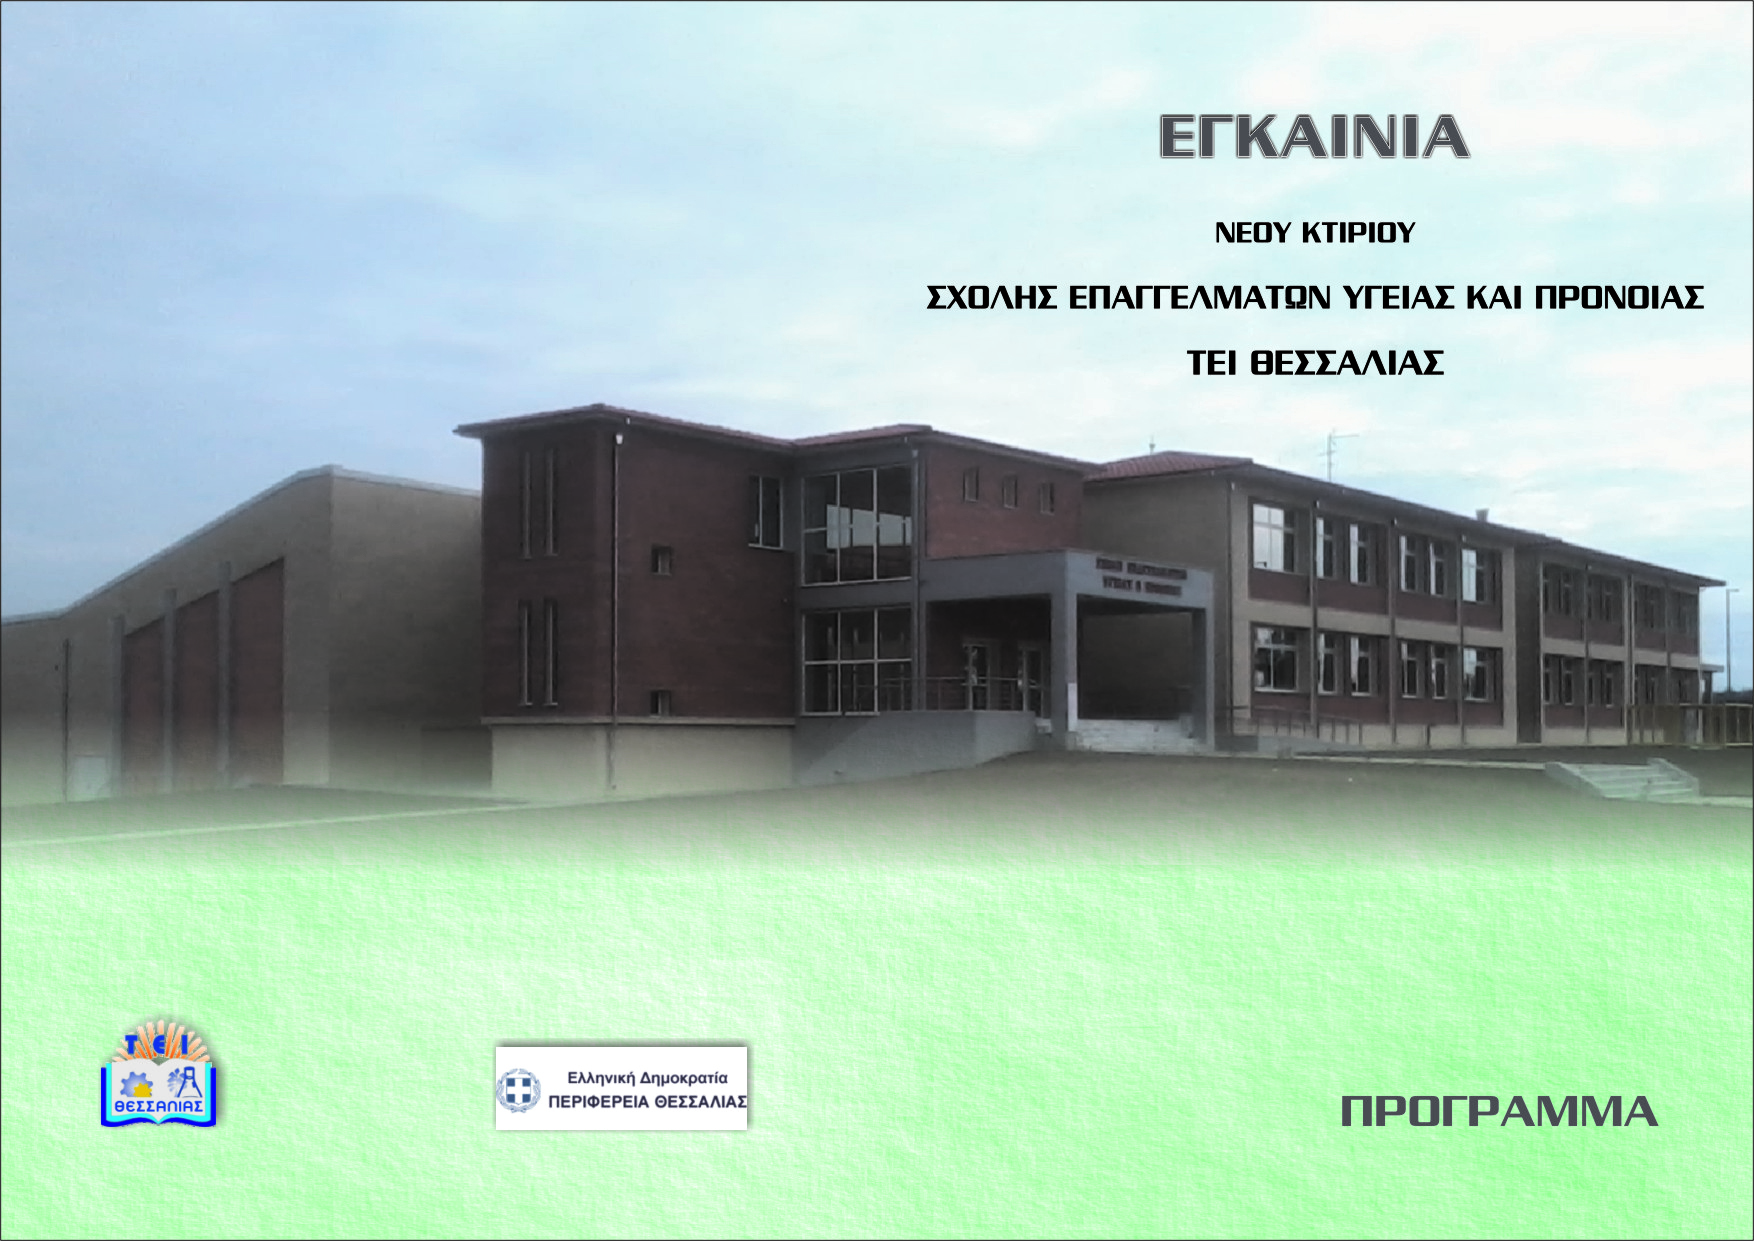 ΤΕΙ Θεσσαλίας: Εγκαινιάζεται το νέο κτιρίο της Σχολής Επαγγελμάτων Υγείας και Πρόνοιας